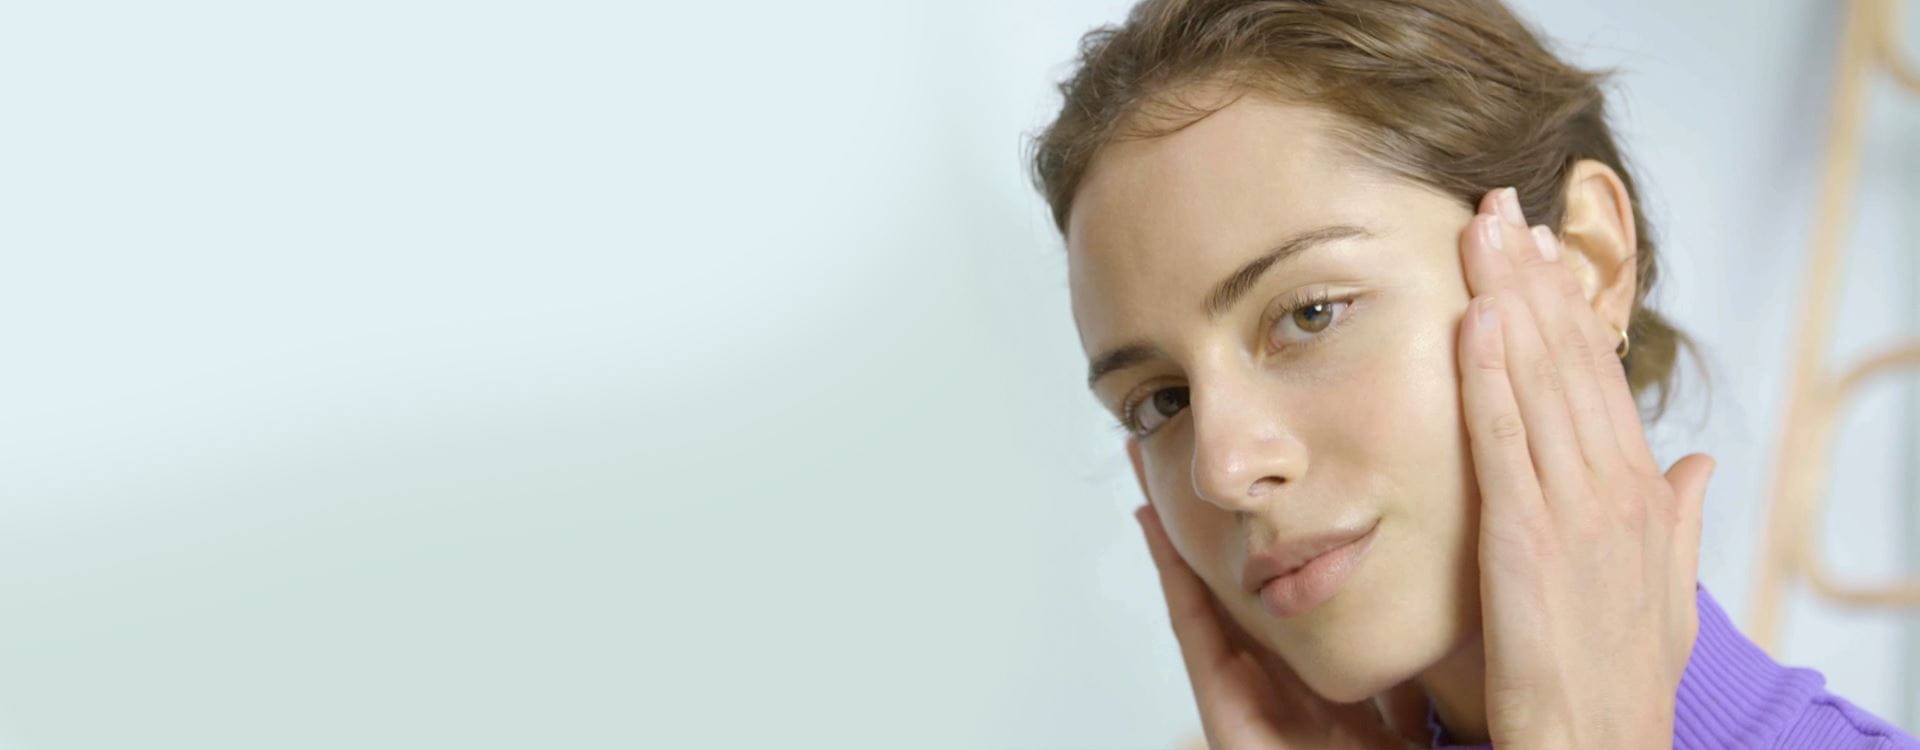 Cari Skincare untuk Eksfoliasi Wajah? NIVEA Solusinya